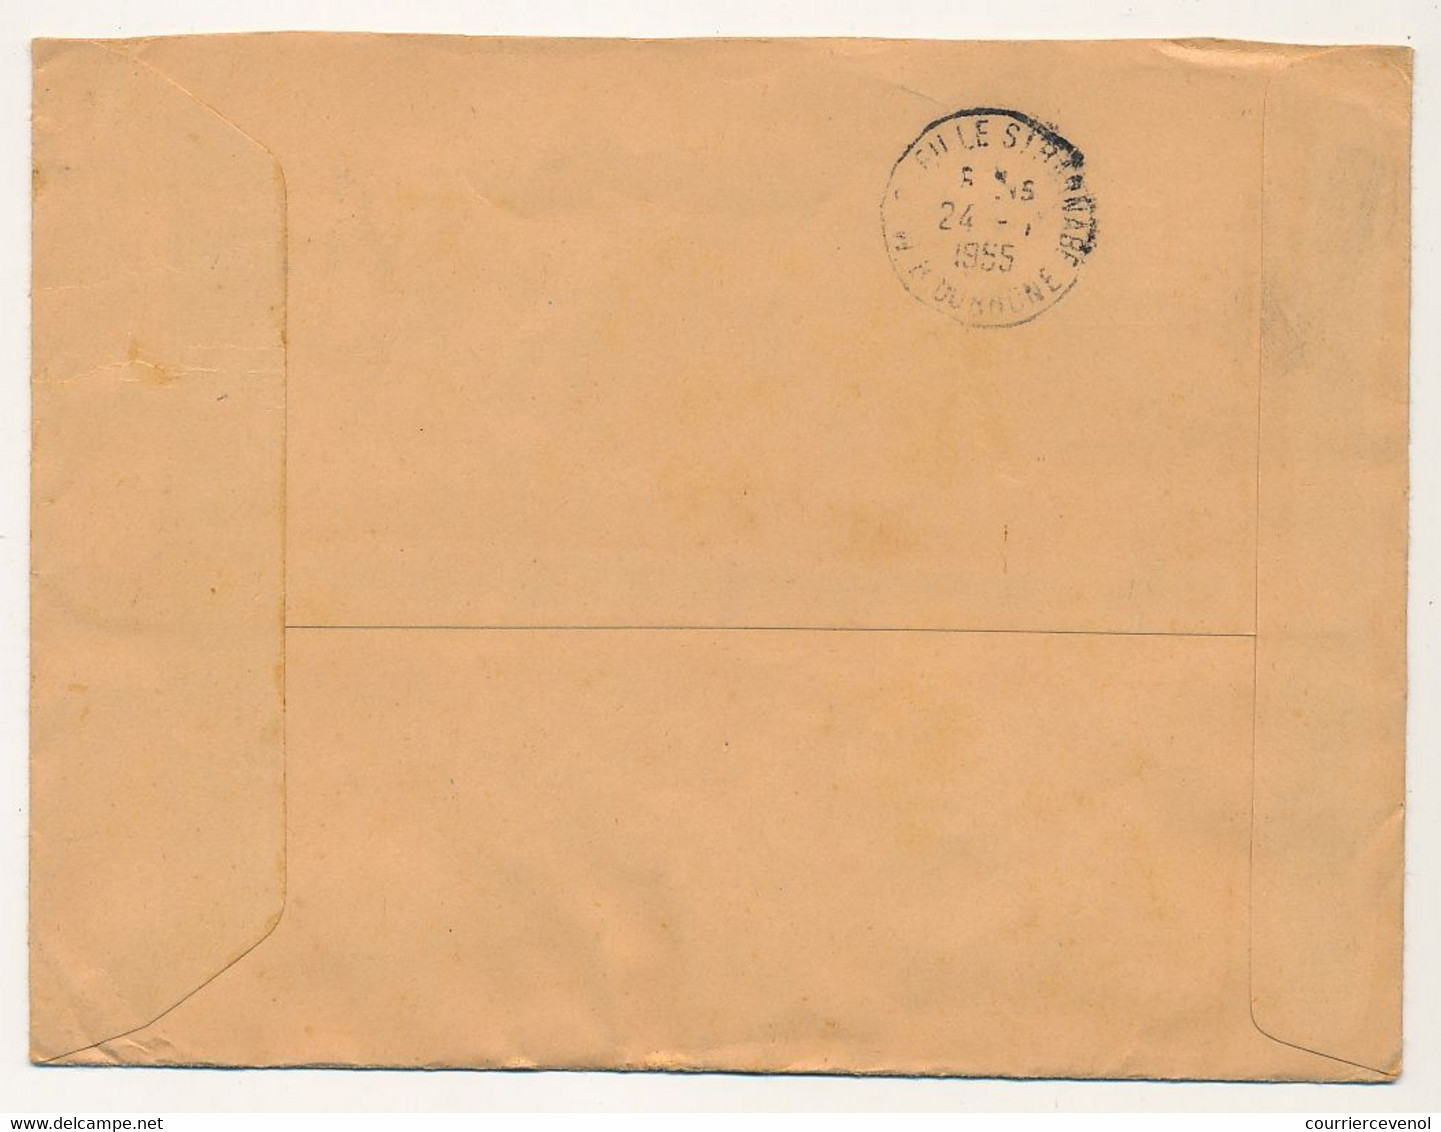 MONACO => Enveloppe Recommandée, Affranchissement Composé Obl Monte-Carlo 1955 - Storia Postale